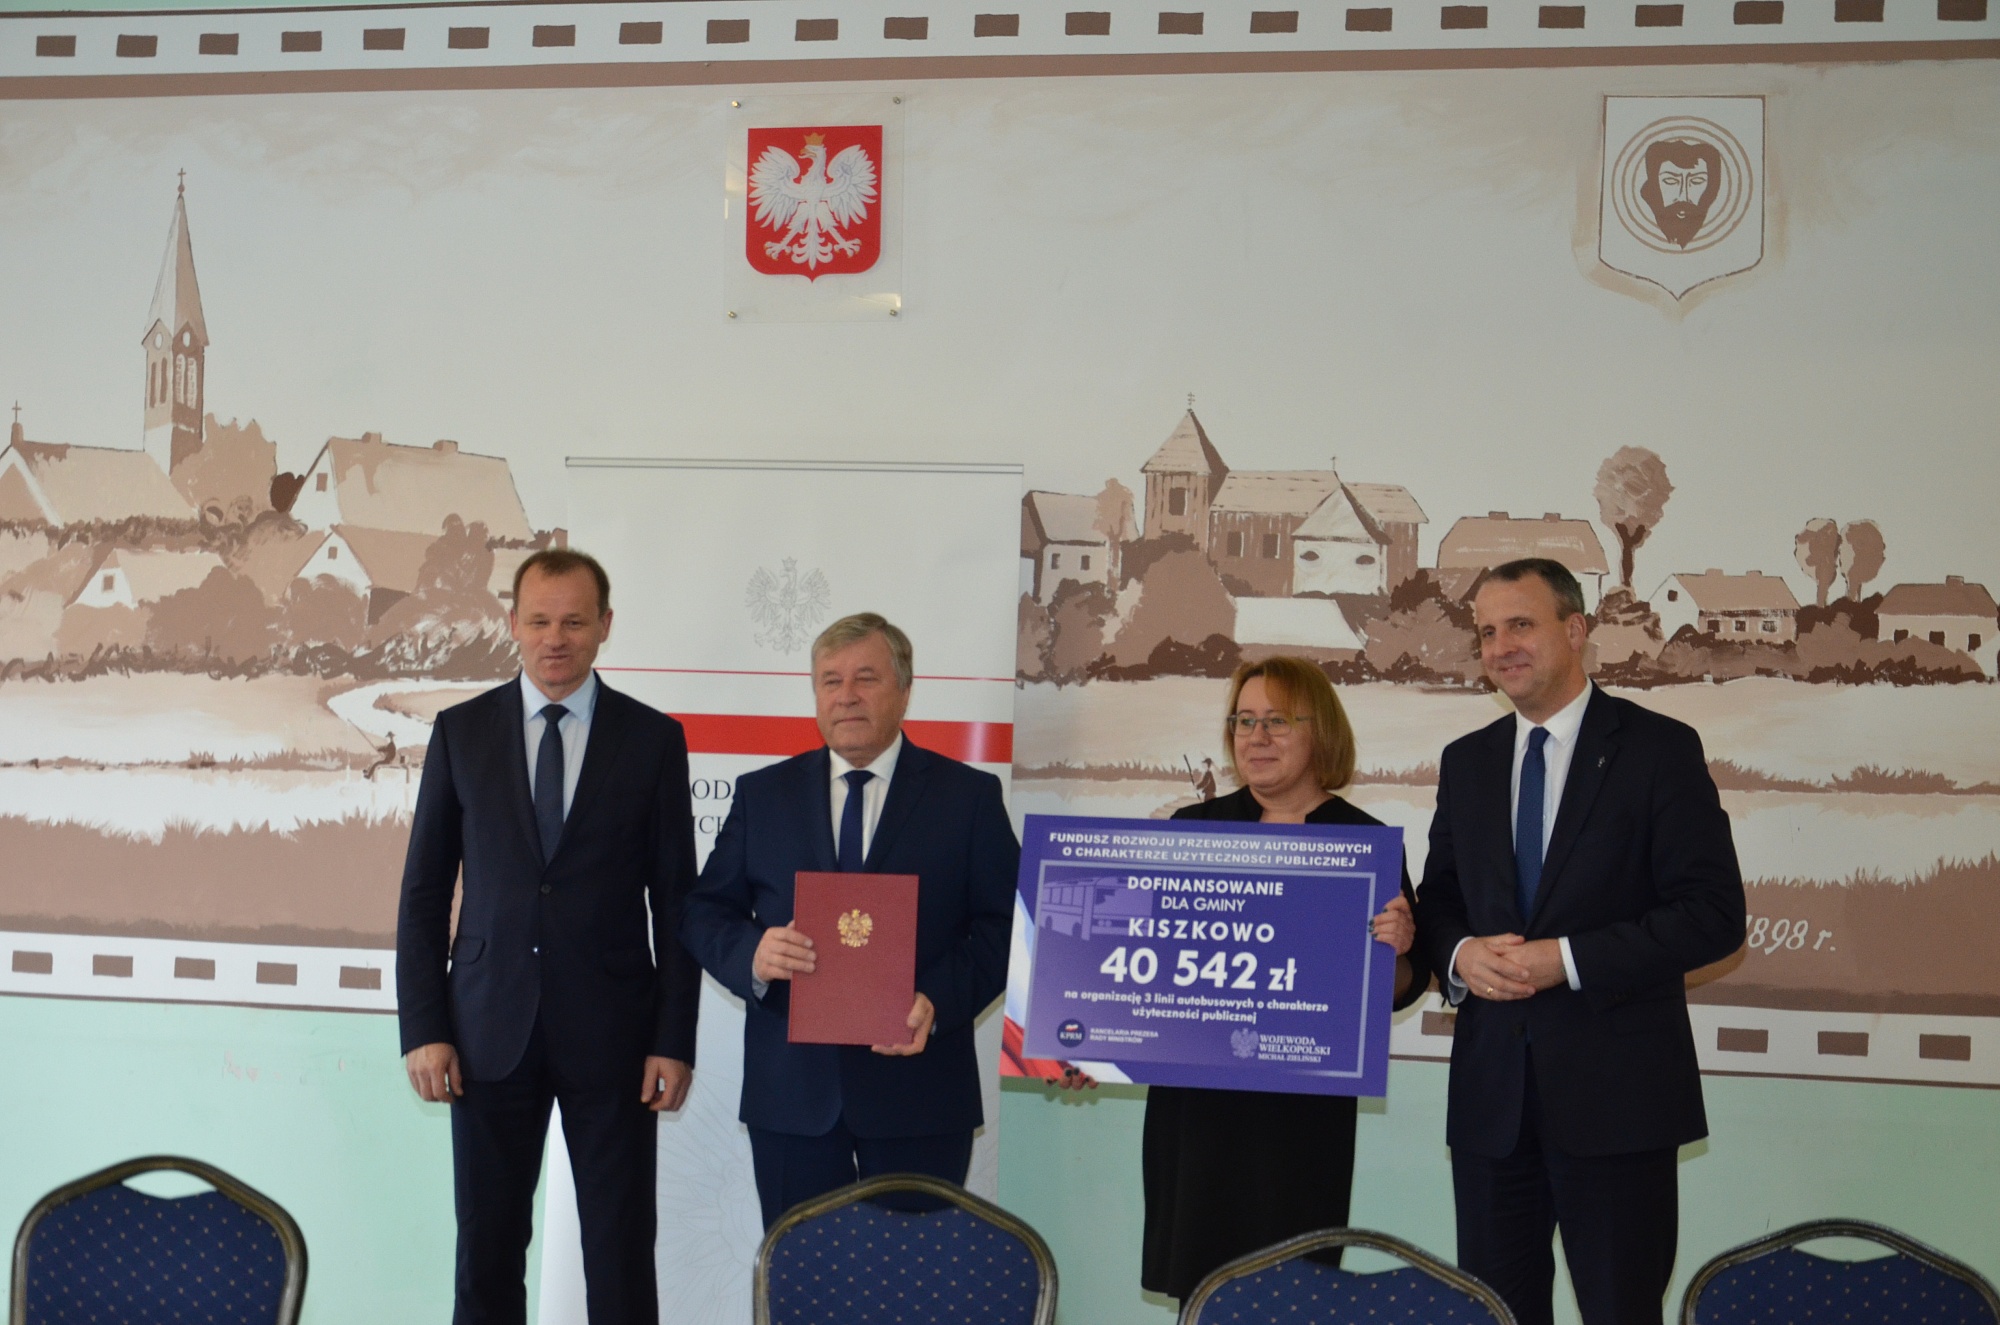 40 542 zł dofinansowania dla Gminy Kiszkowo od Wojewody Wielkopolskiego